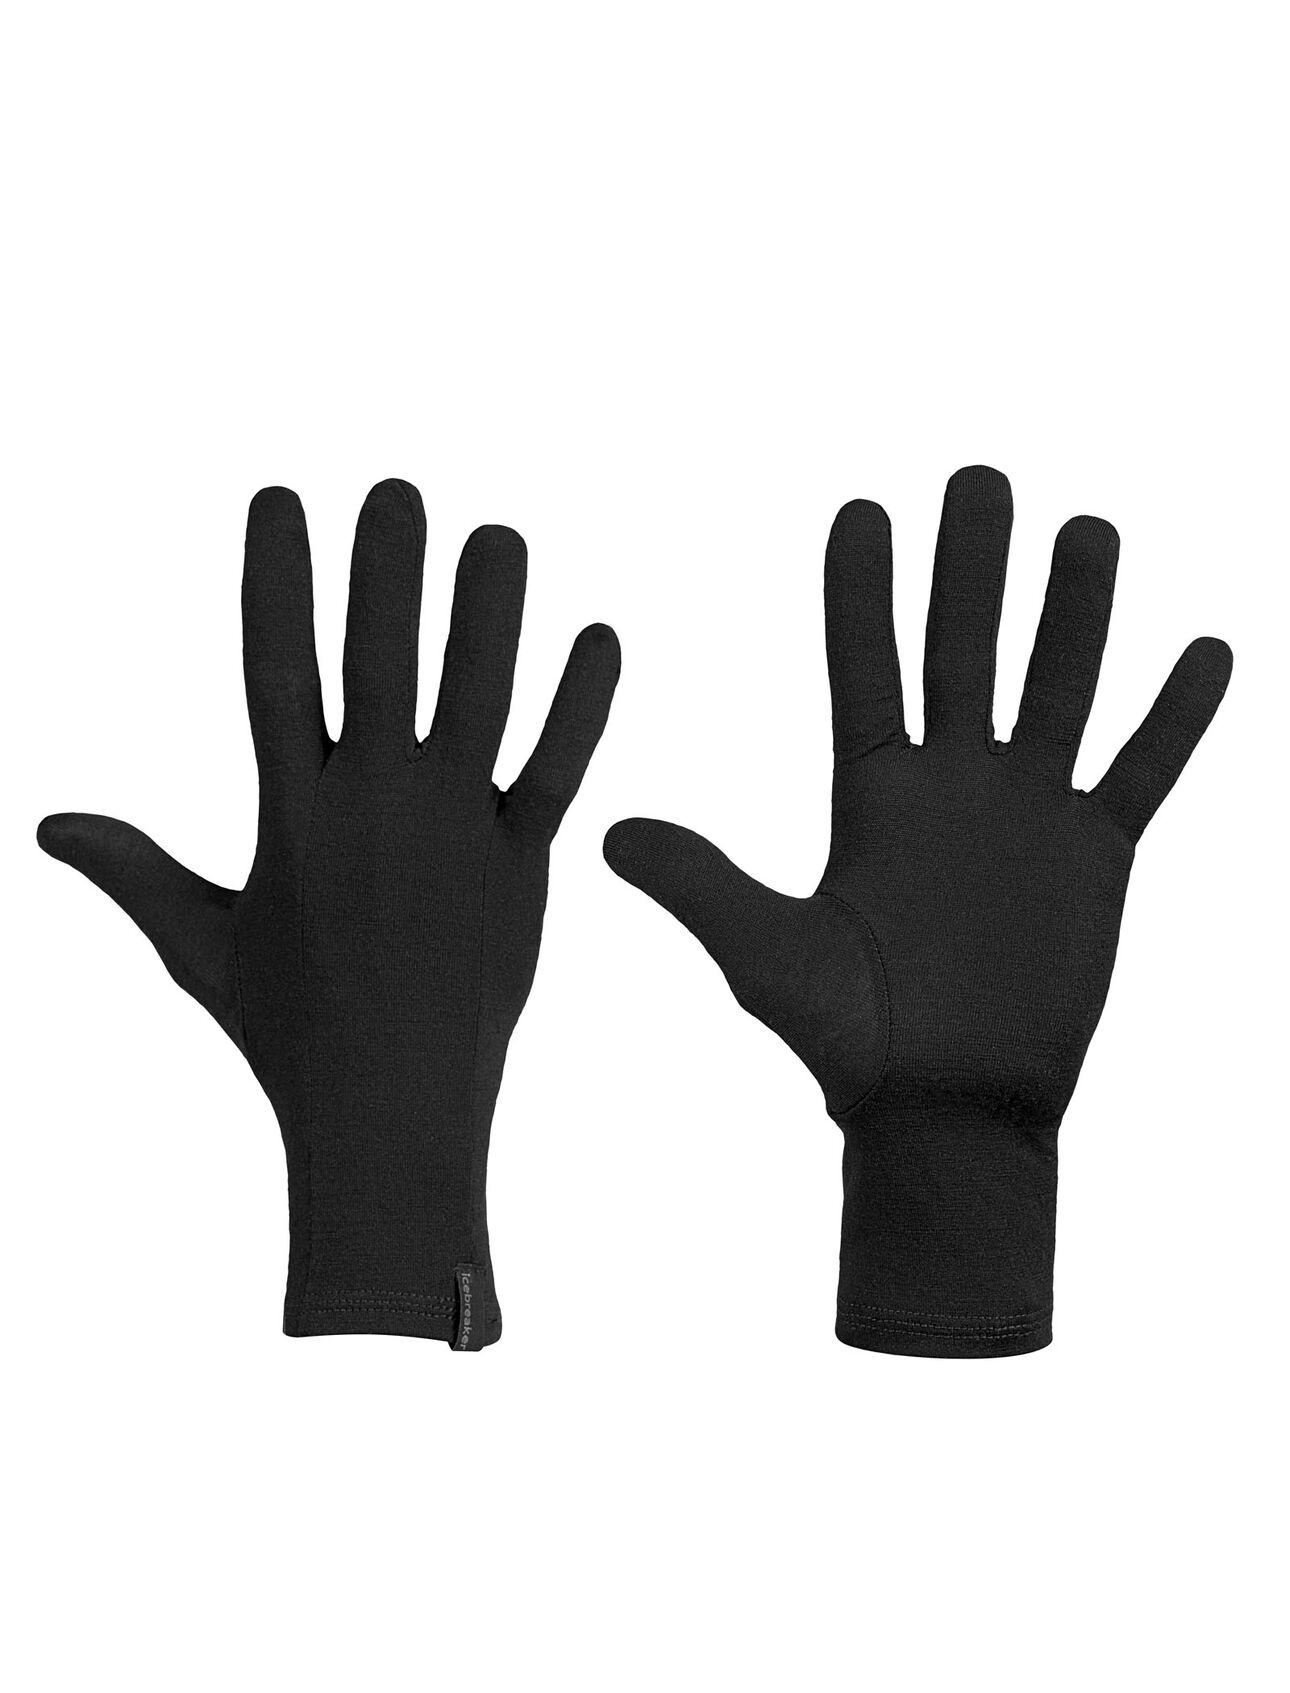 Doublures de gants Oasis Glove Liners 200 en mérinos